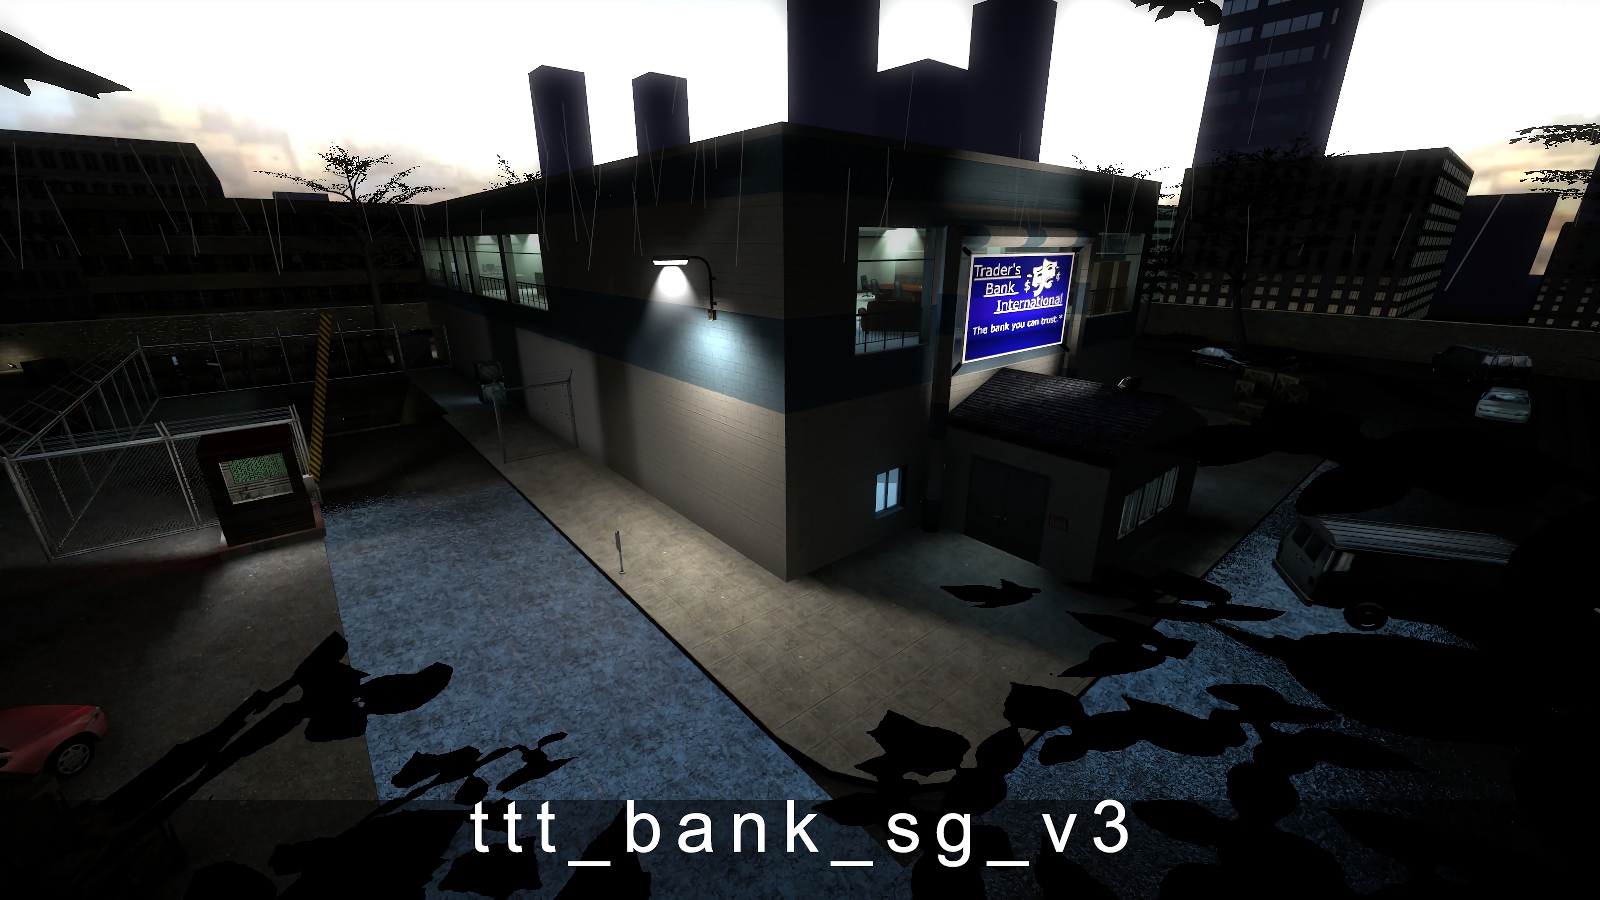 ttt_bank_sg_v3.jpg